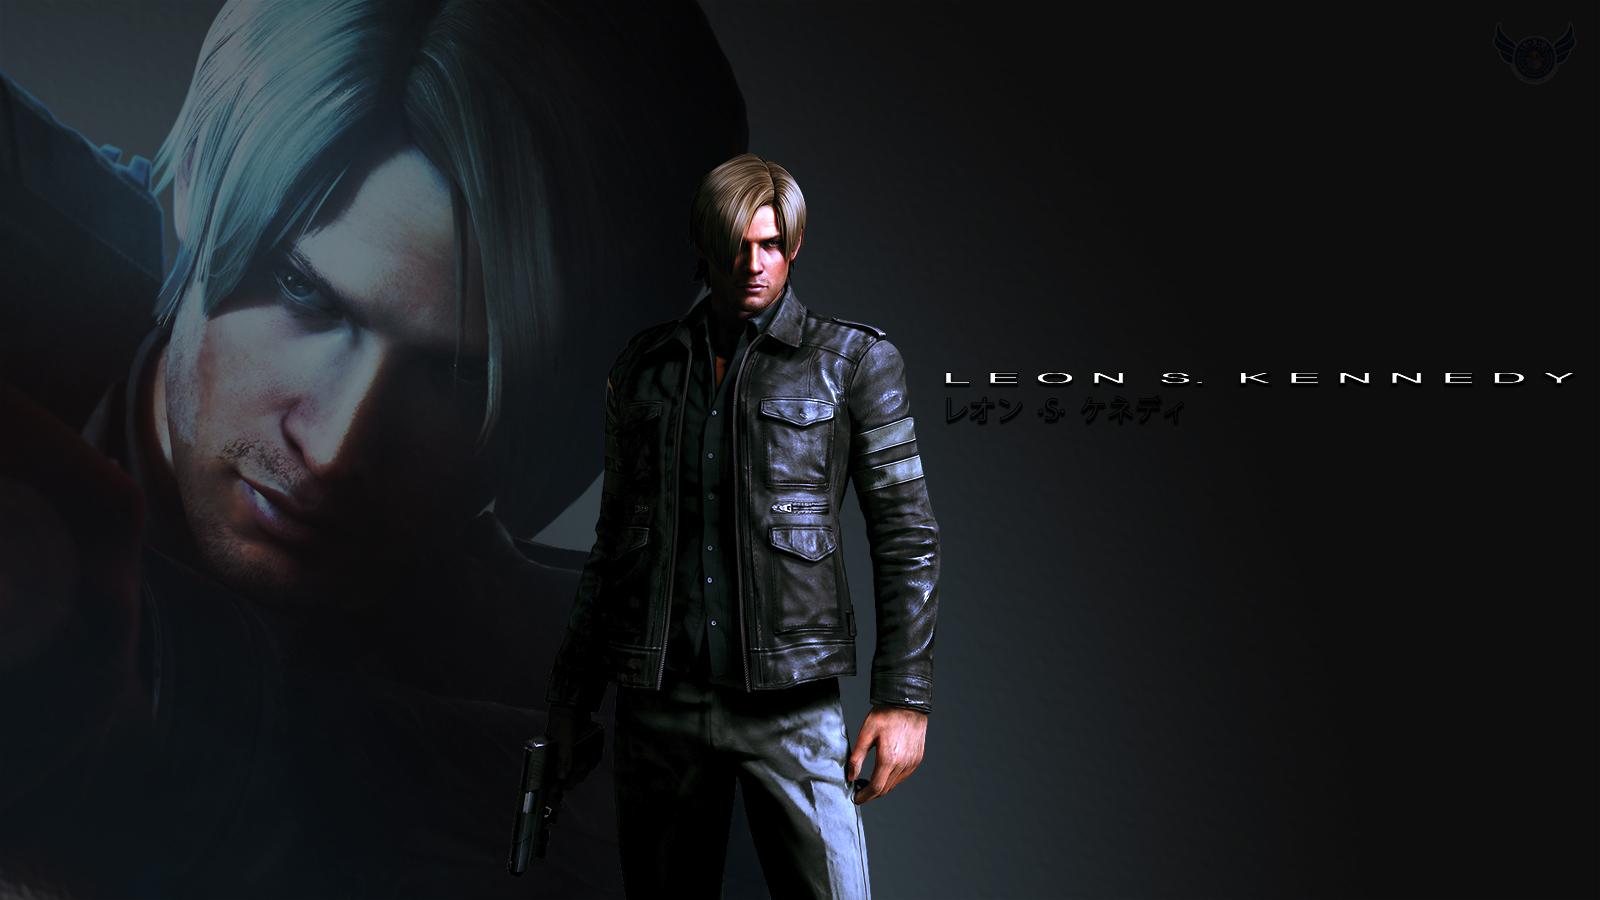 Leon Resident Evil 6 Wallpaper